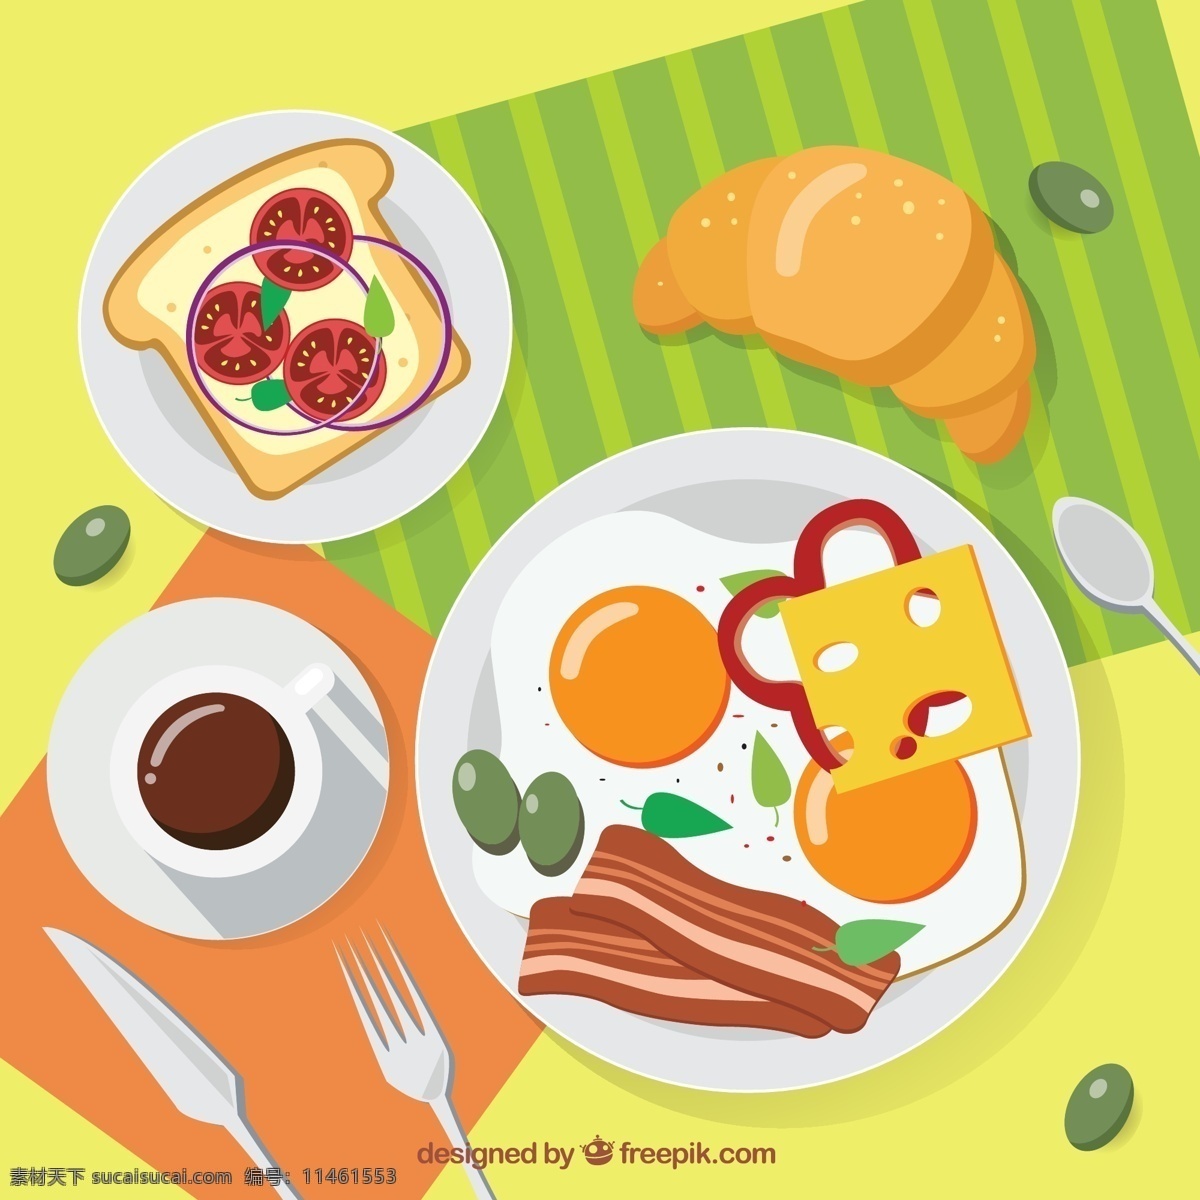 创意 健康 早餐 桌 矢量 面包片 番茄 牛角面包 奶酪 煎鸡蛋 培根 橄榄 餐勺 咖啡 餐叉 餐具 食物 餐桌 矢量图 ai格式 最新矢量图 画册设计